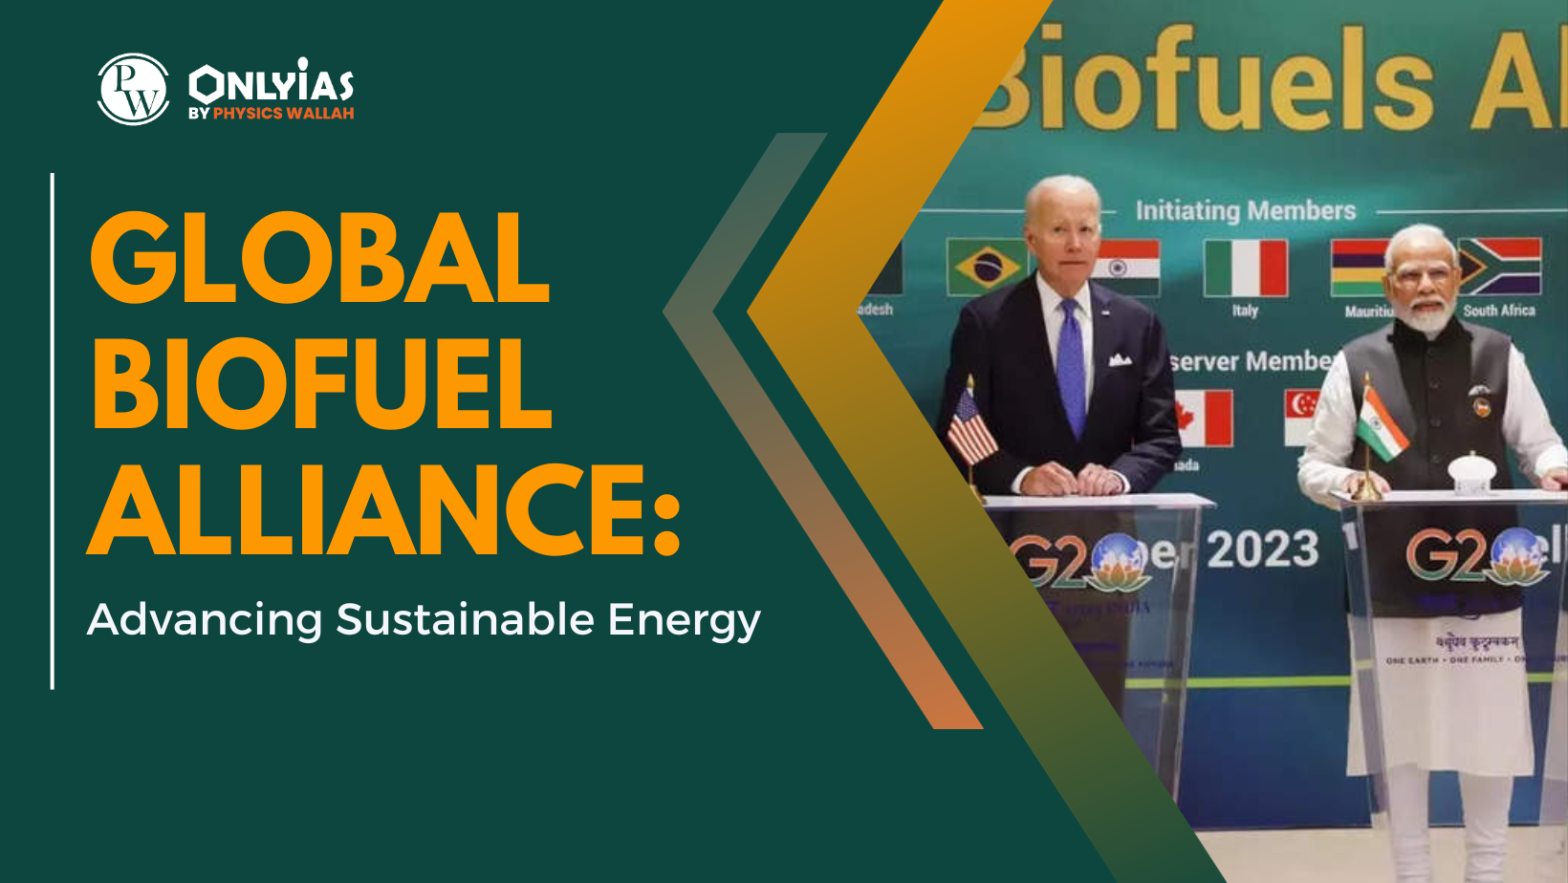 Global Biofuel Alliance: Advancing Sustainable Energy | PWOnlyIAS 2023